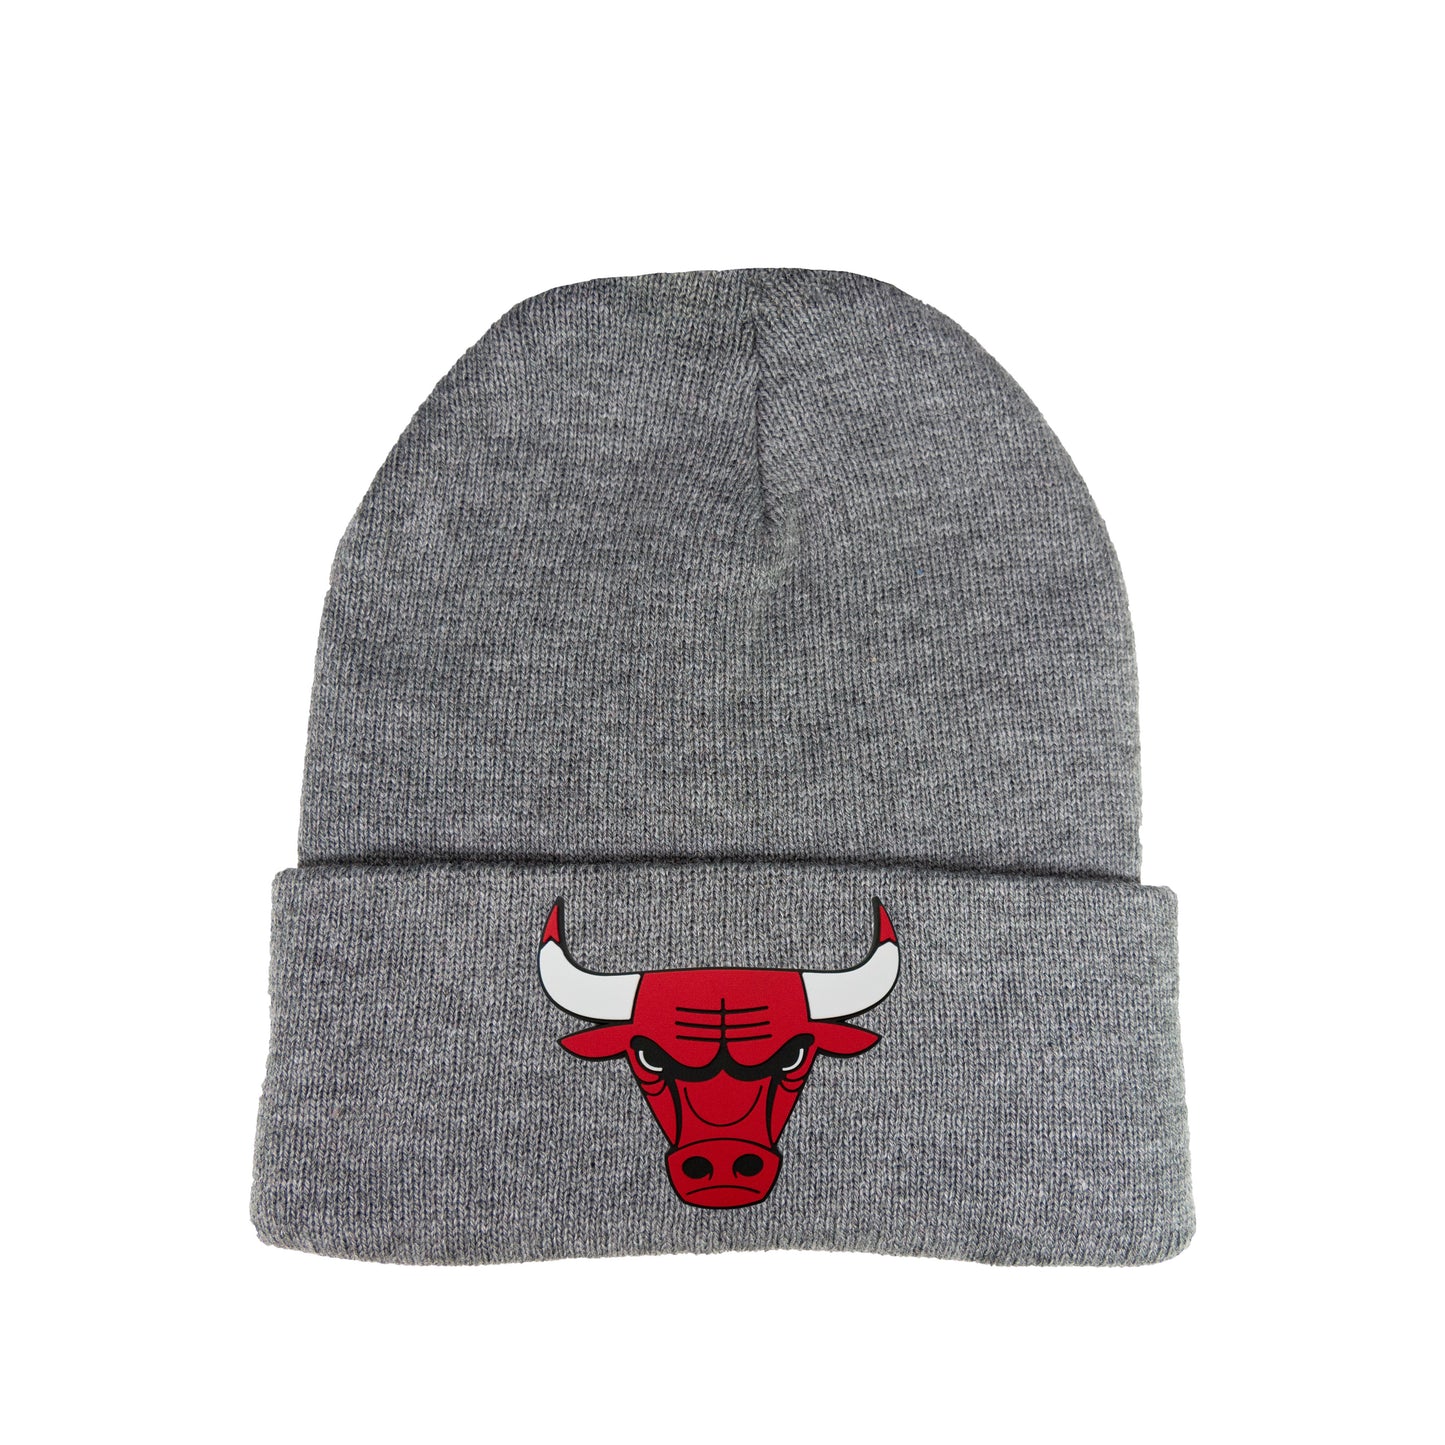 Chicago Bulls 3D 12 in Knit Beanie- Dark Heather Grey - Ten Gallon Hat Co.